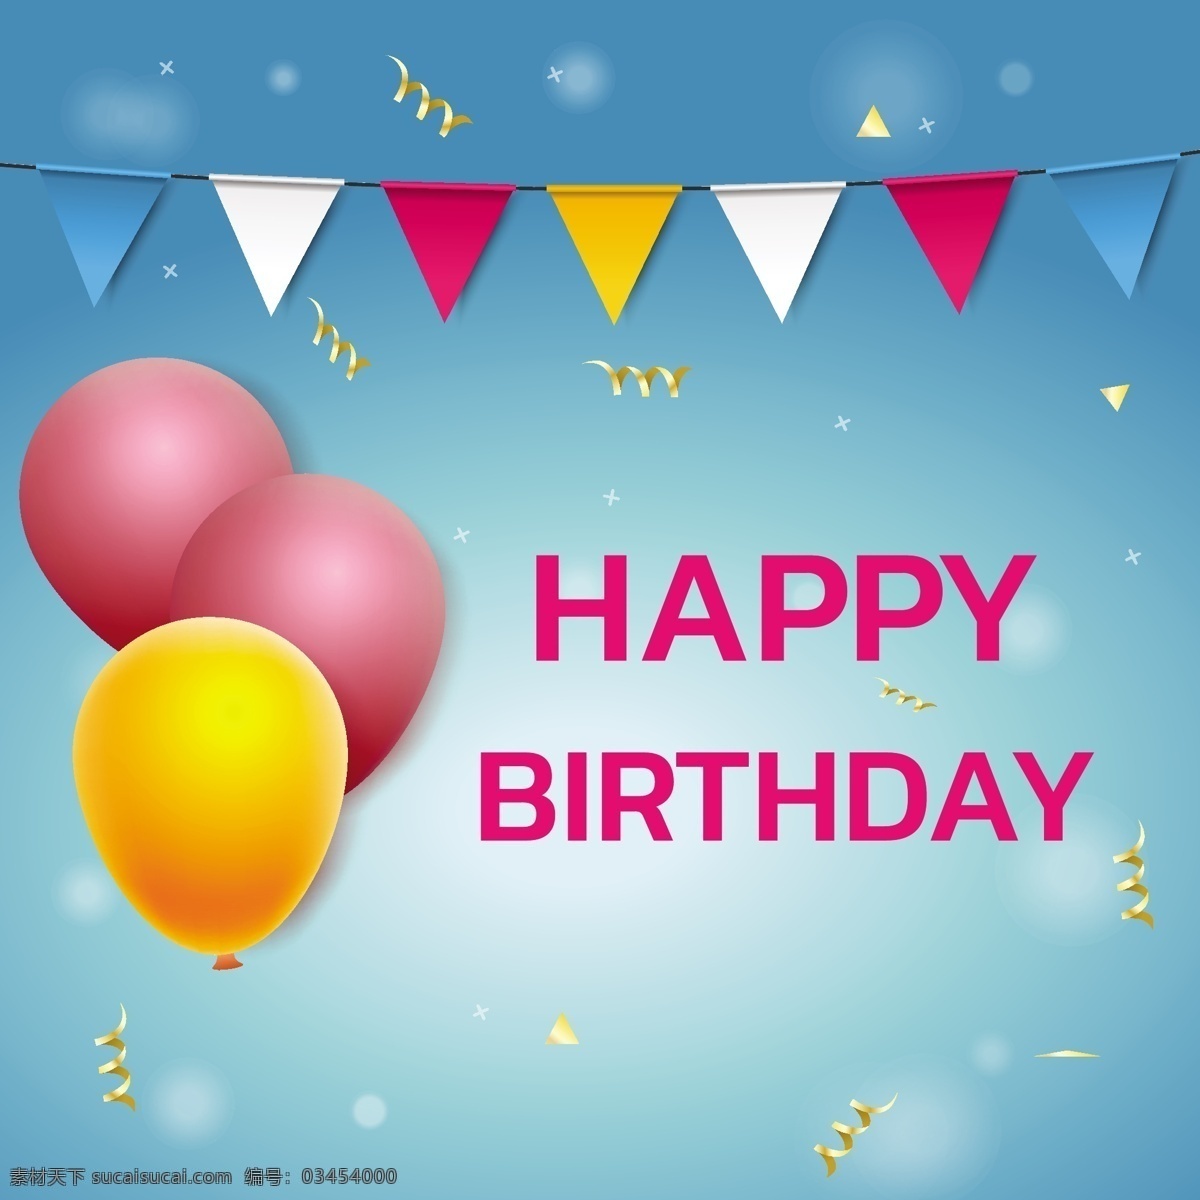 生日气球图片 生日气球 节日 气球 生日快乐 生日 生日背景